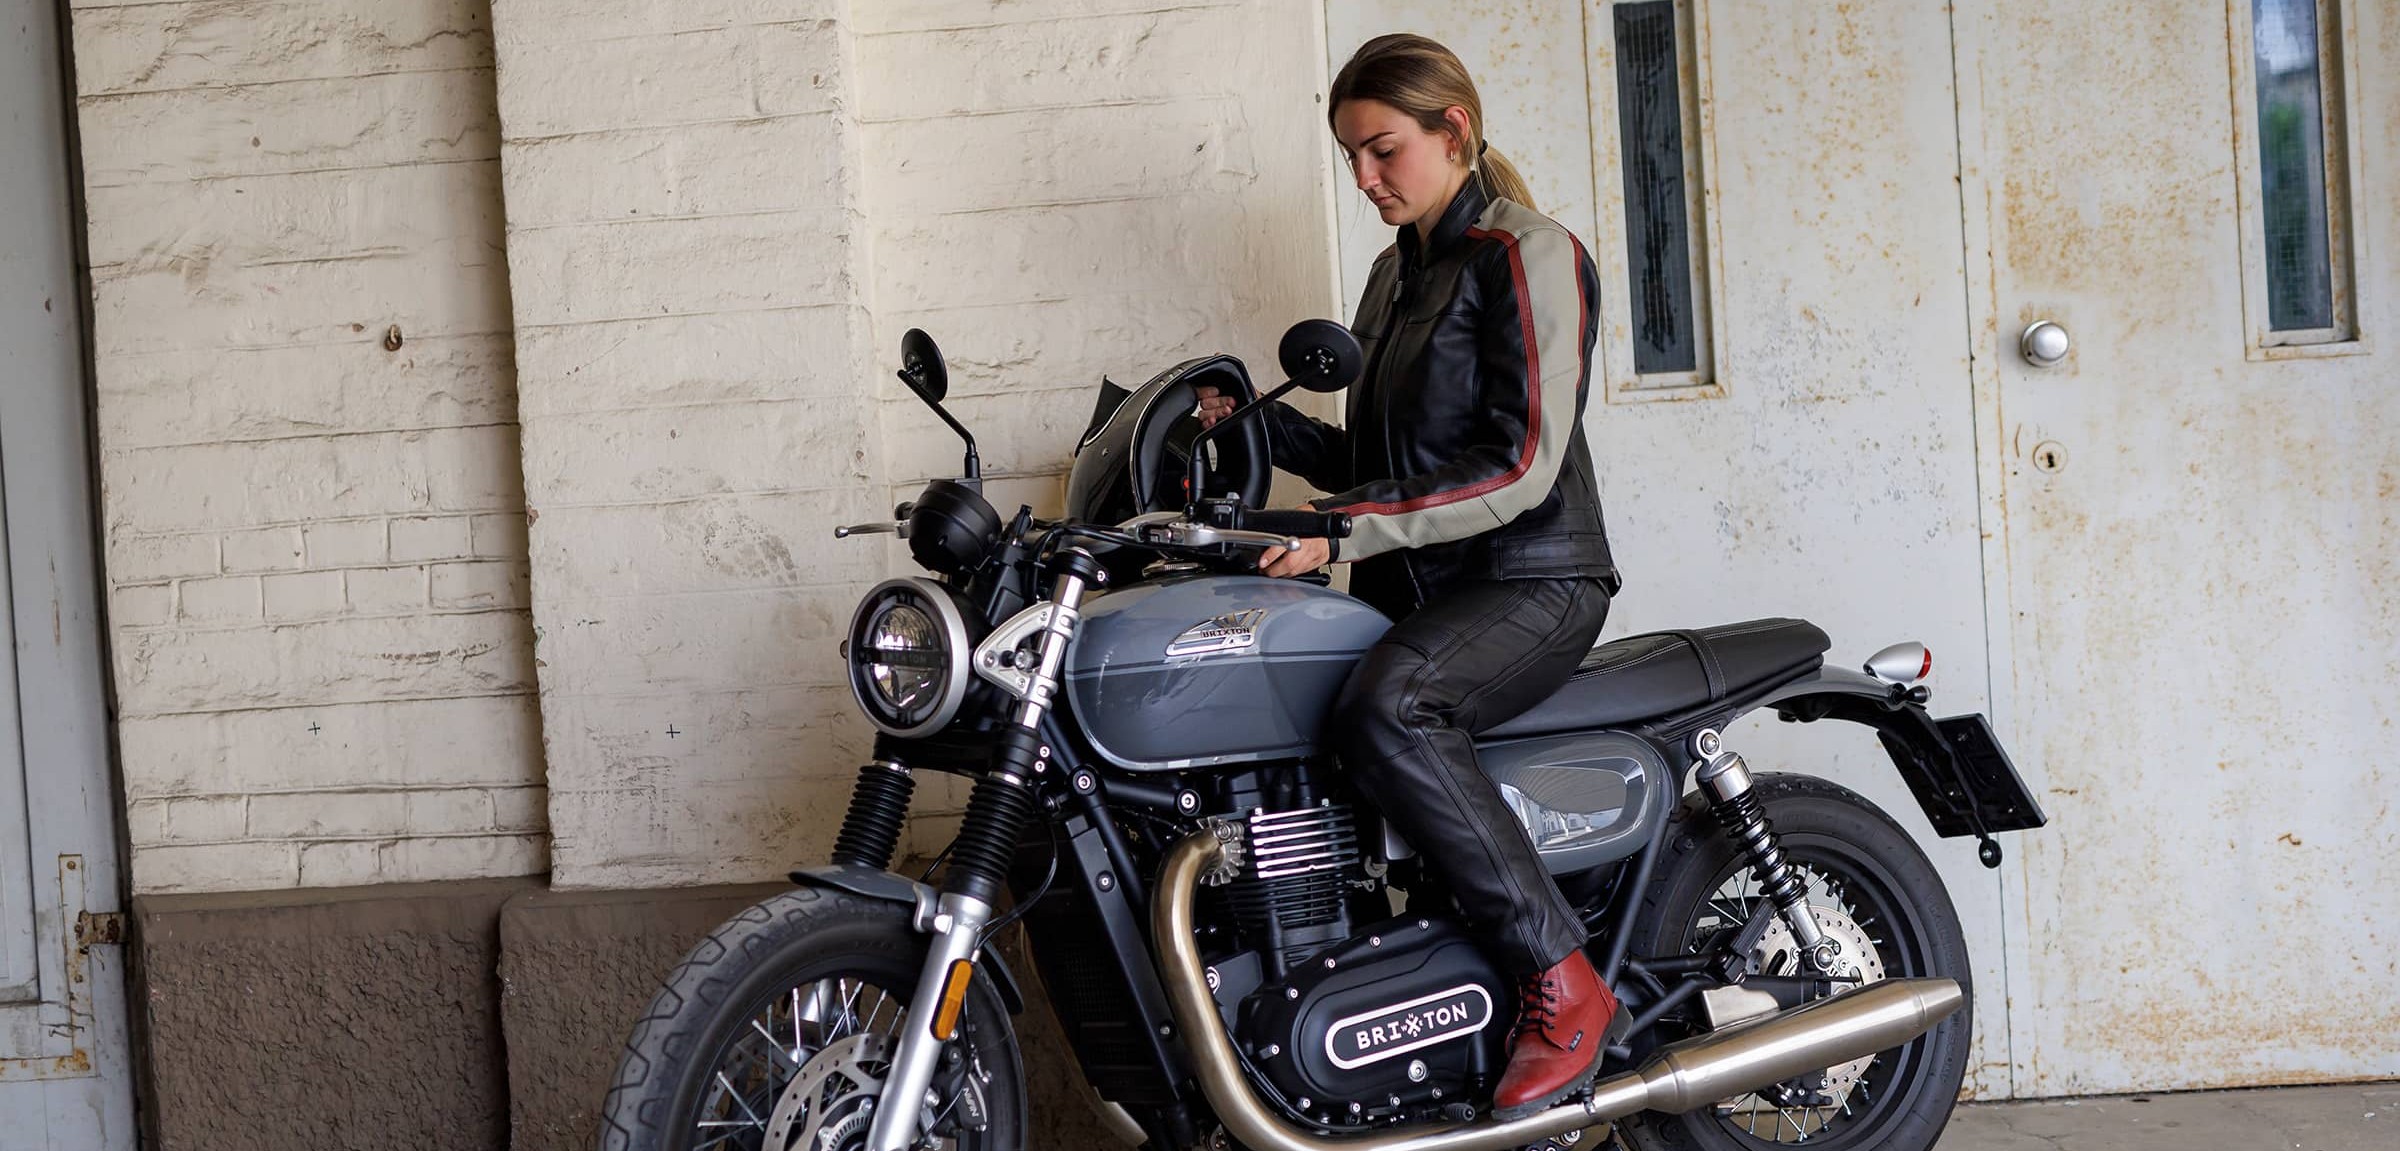 Pantalons moto femme - cuir et textile - été et hiver